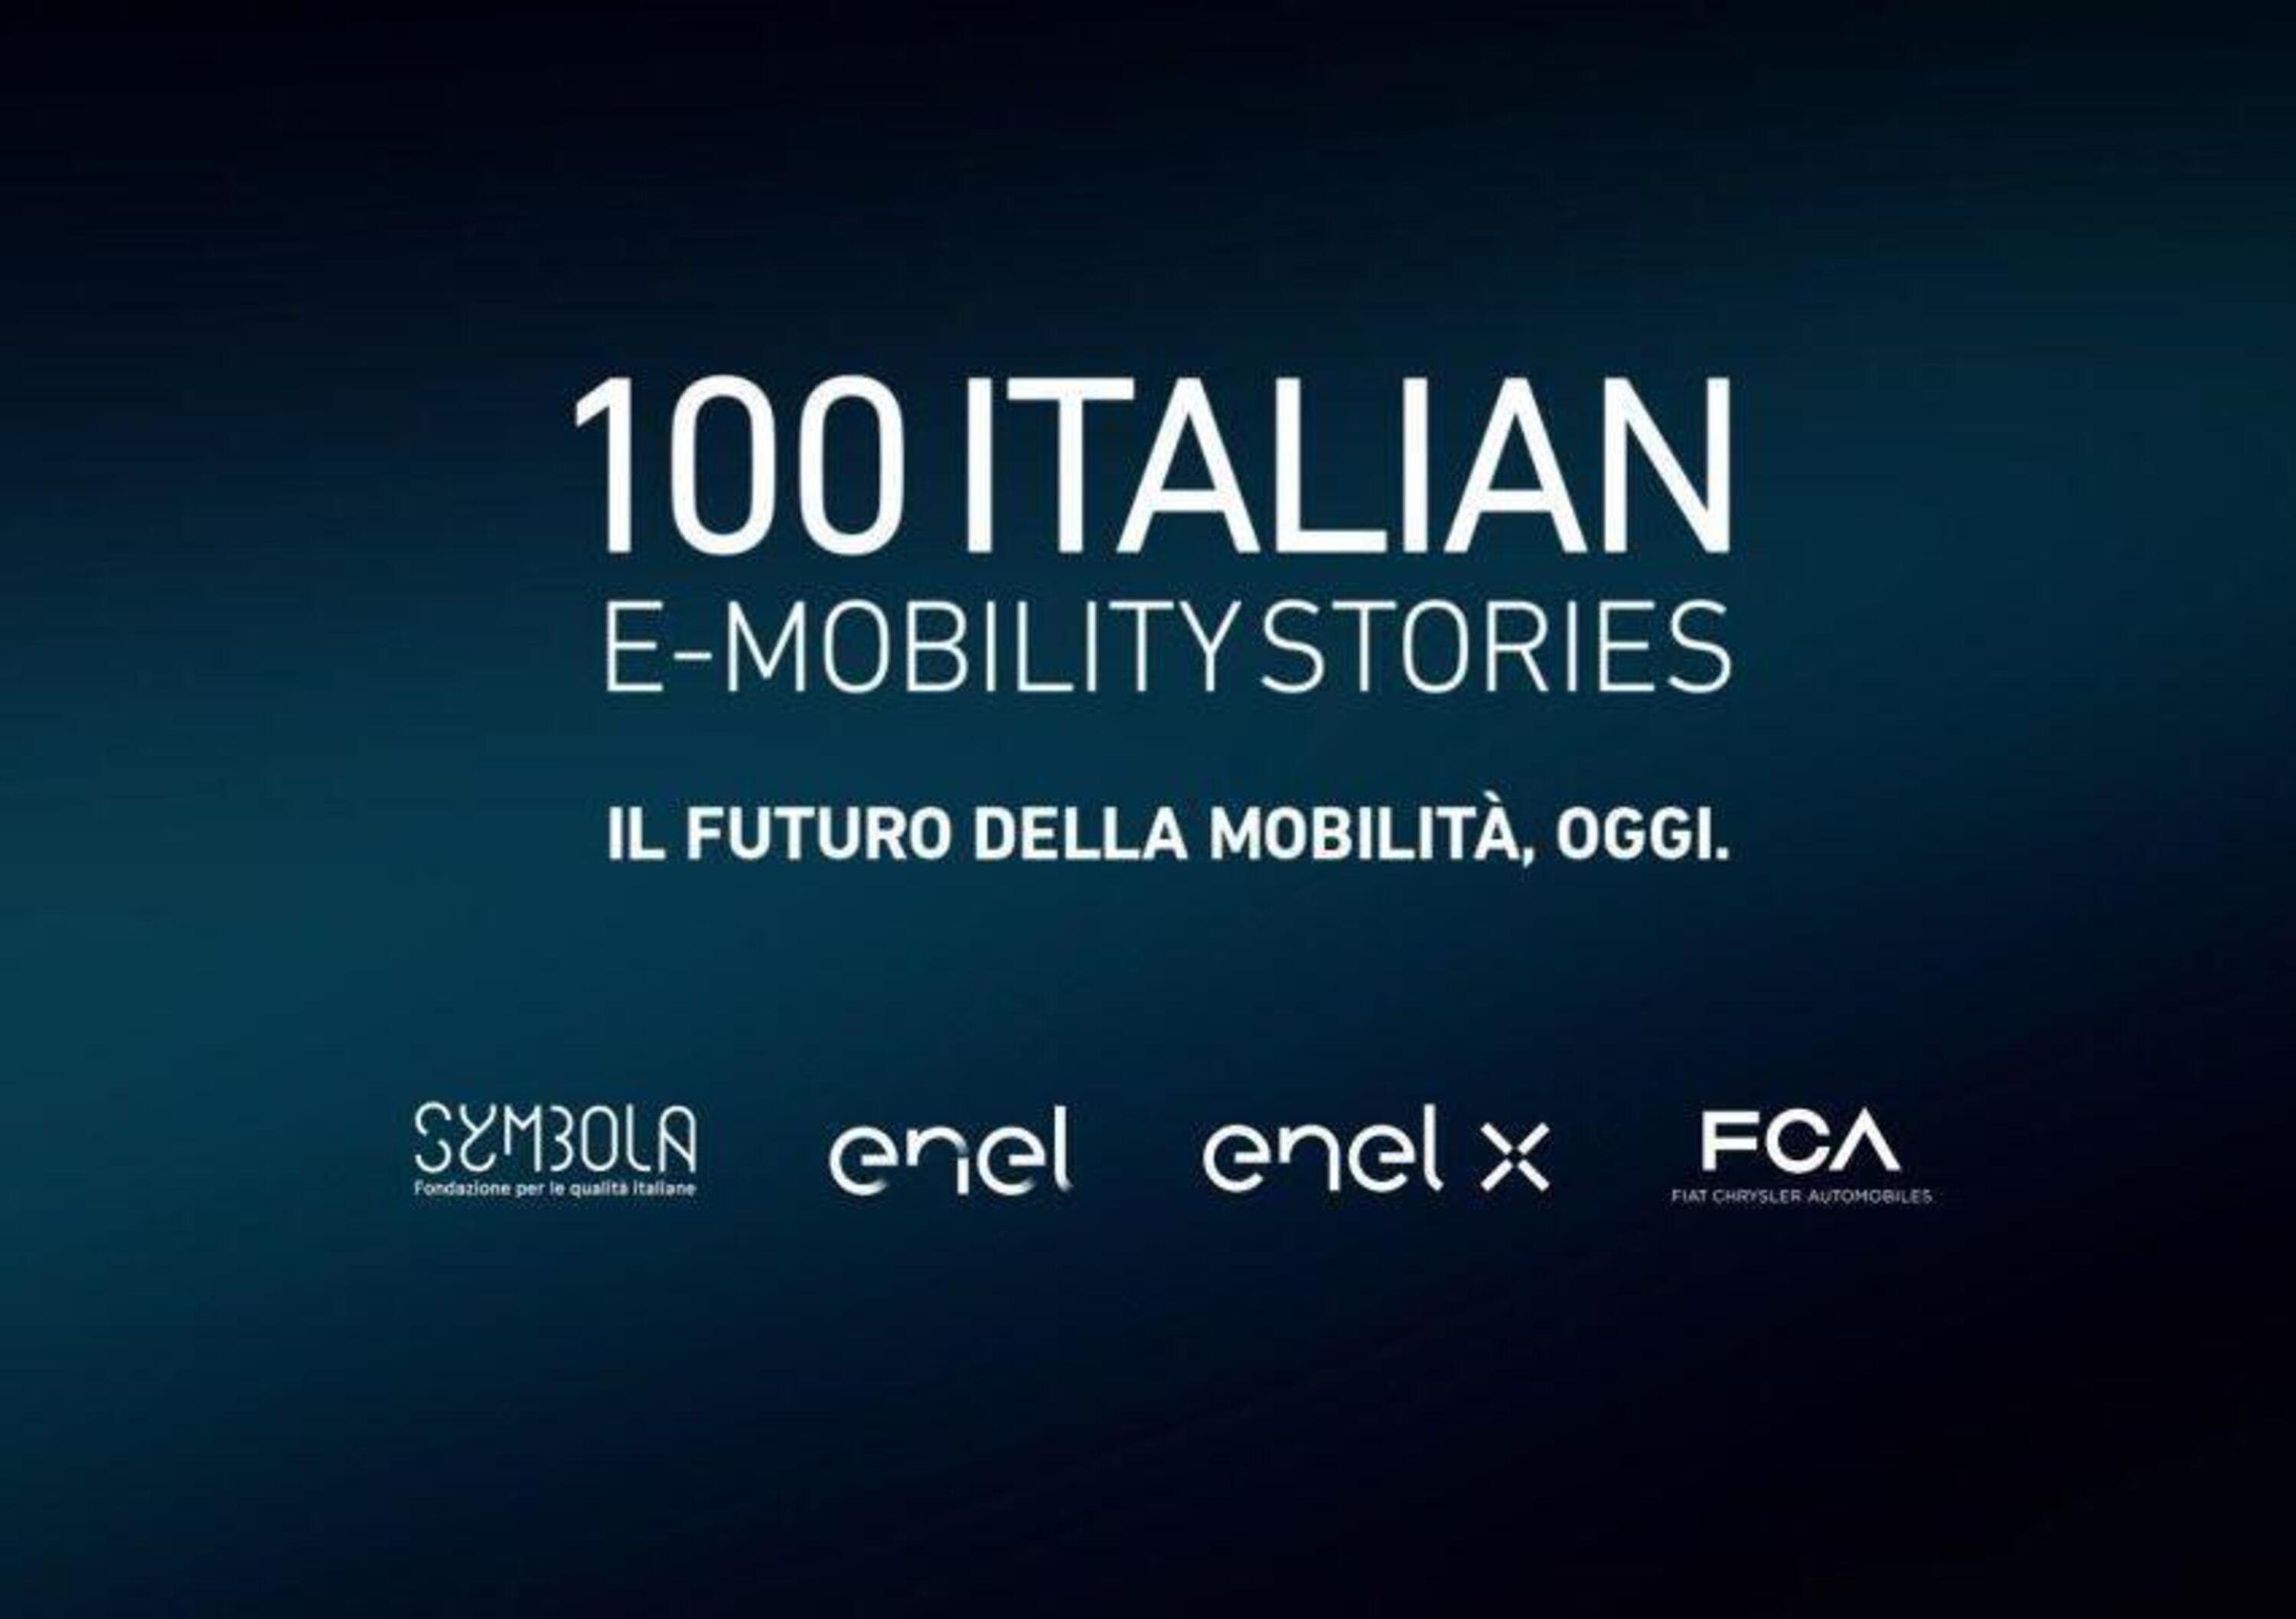 FCA con Enel e Symbola promuovono l&rsquo;auto elettrica: E-Mobility Stories 2020 puntando al 2025